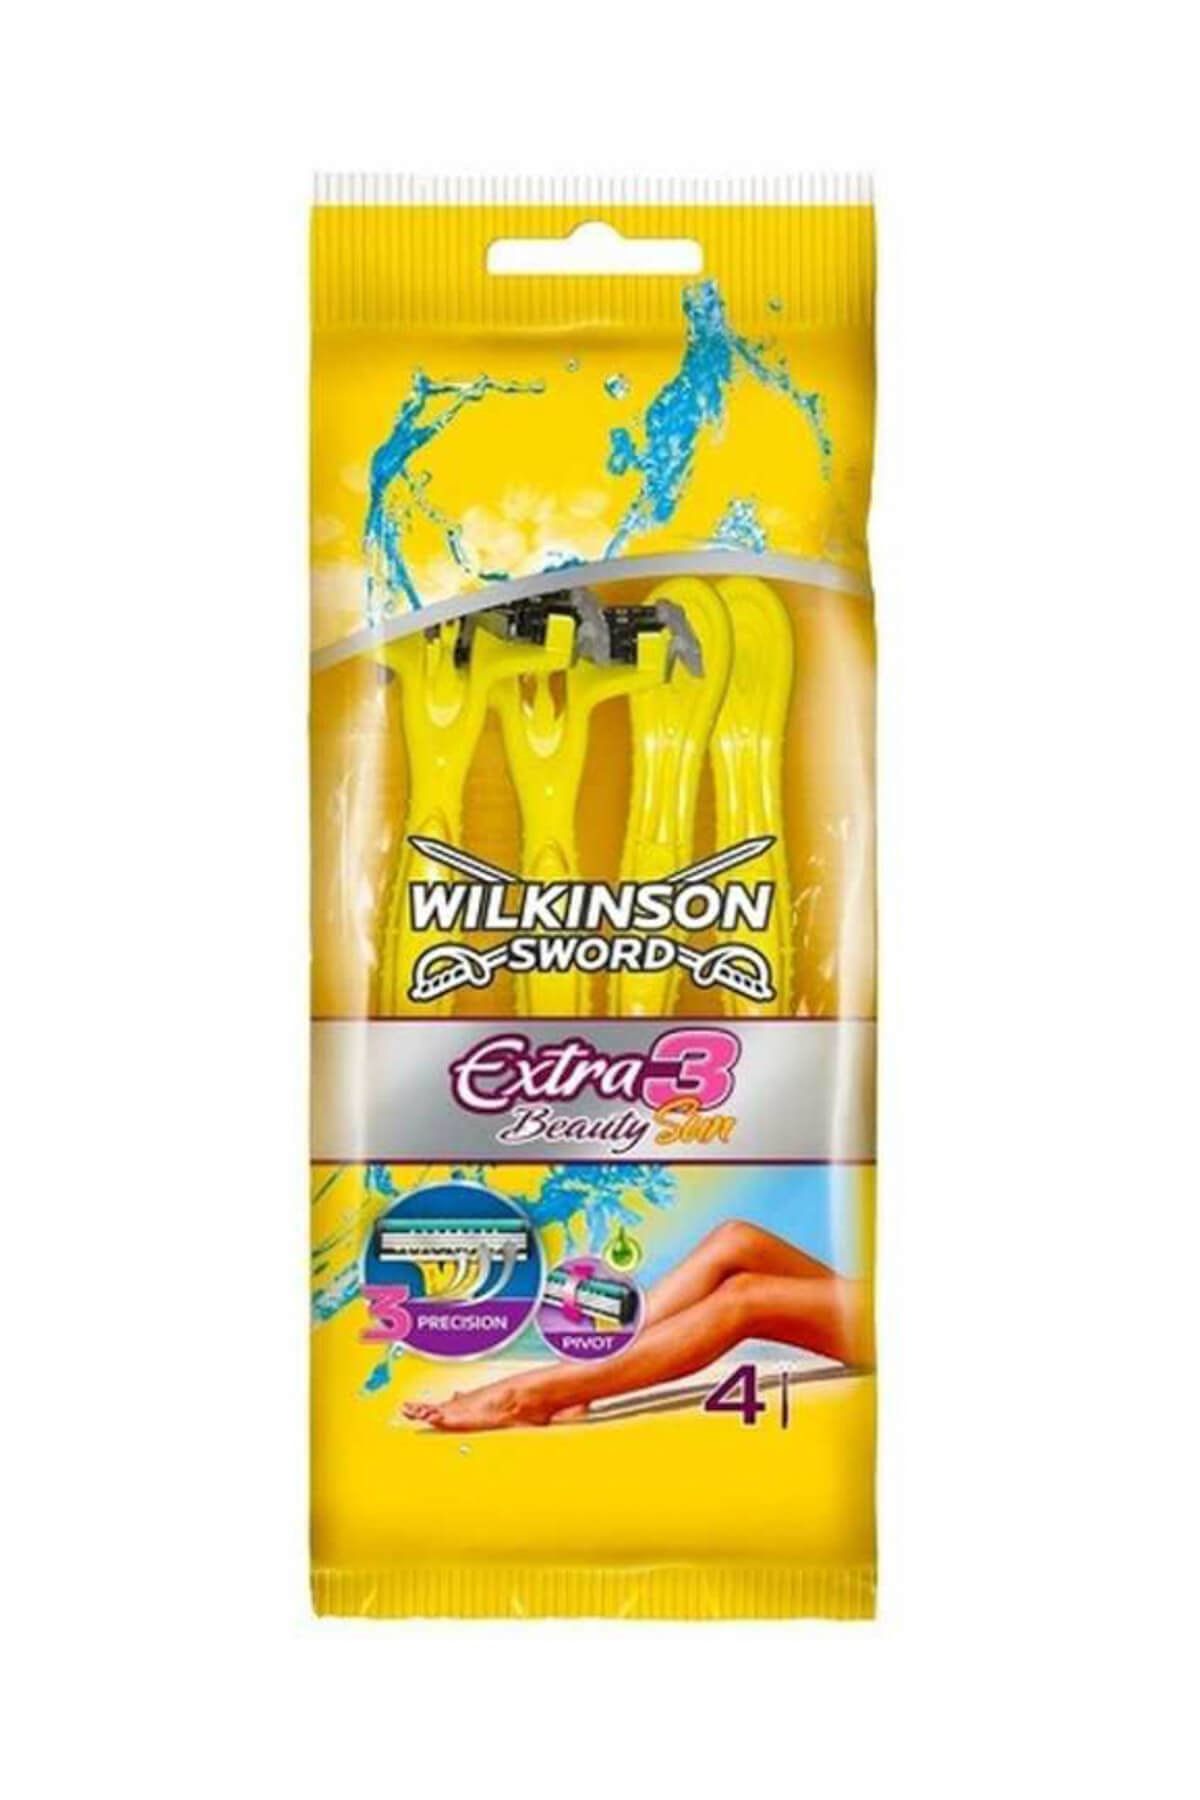 Wilkinson Sword Extra 3 Beauty Sun - Oynar Başlıklı Kullan At Tıraş Bıçağı 4'lü Paket